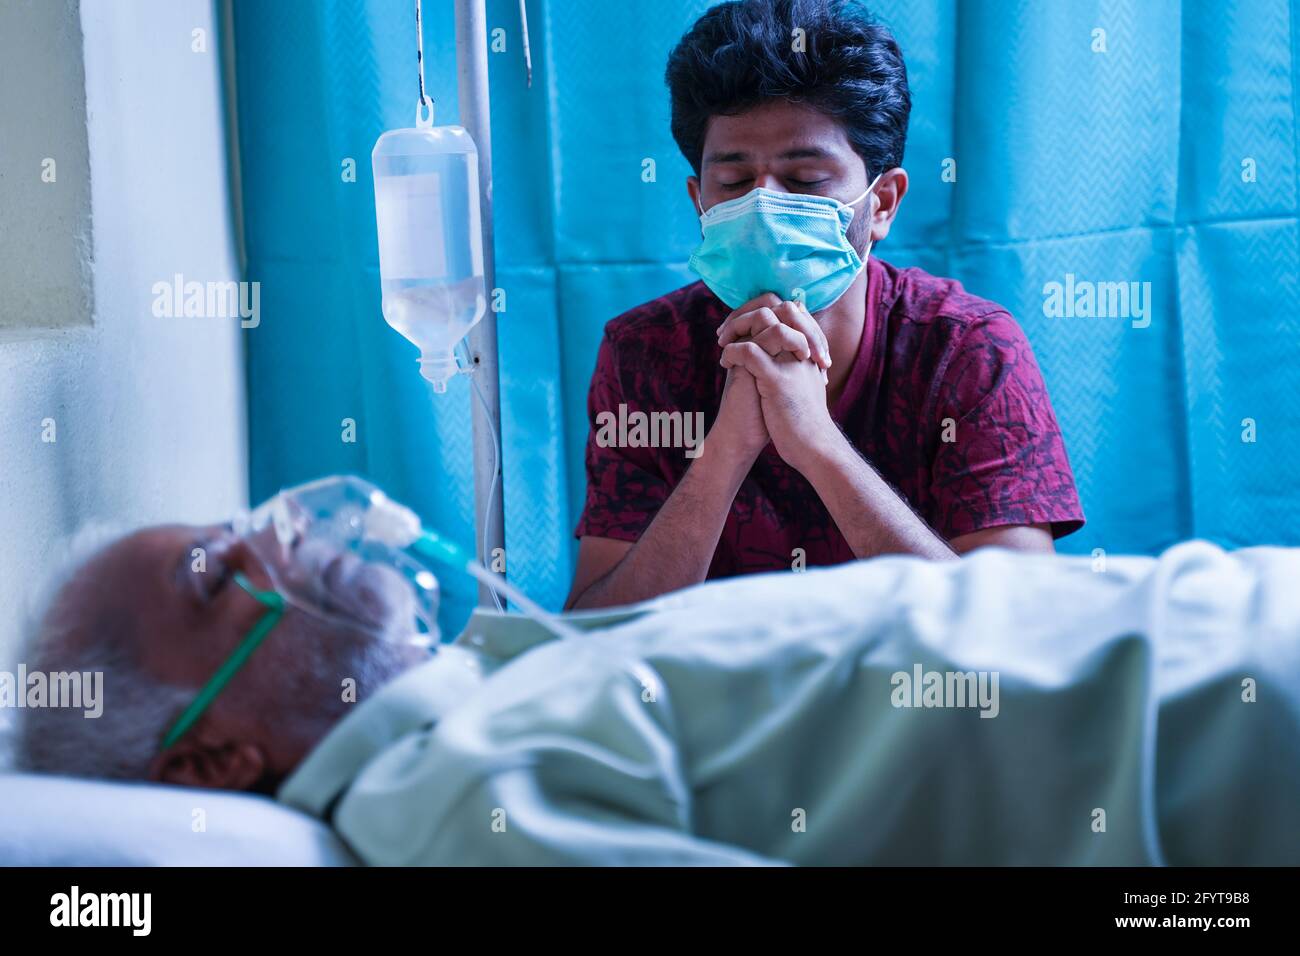 Beunruhigt gestresster junger Mann, der für seinen Vater betet, sich von einer covid 19-Infektion zu erholen, während er im Krankenhaus auf einer Sauerstoffmaske des Beatmungsgeräts atmet - Stockfoto